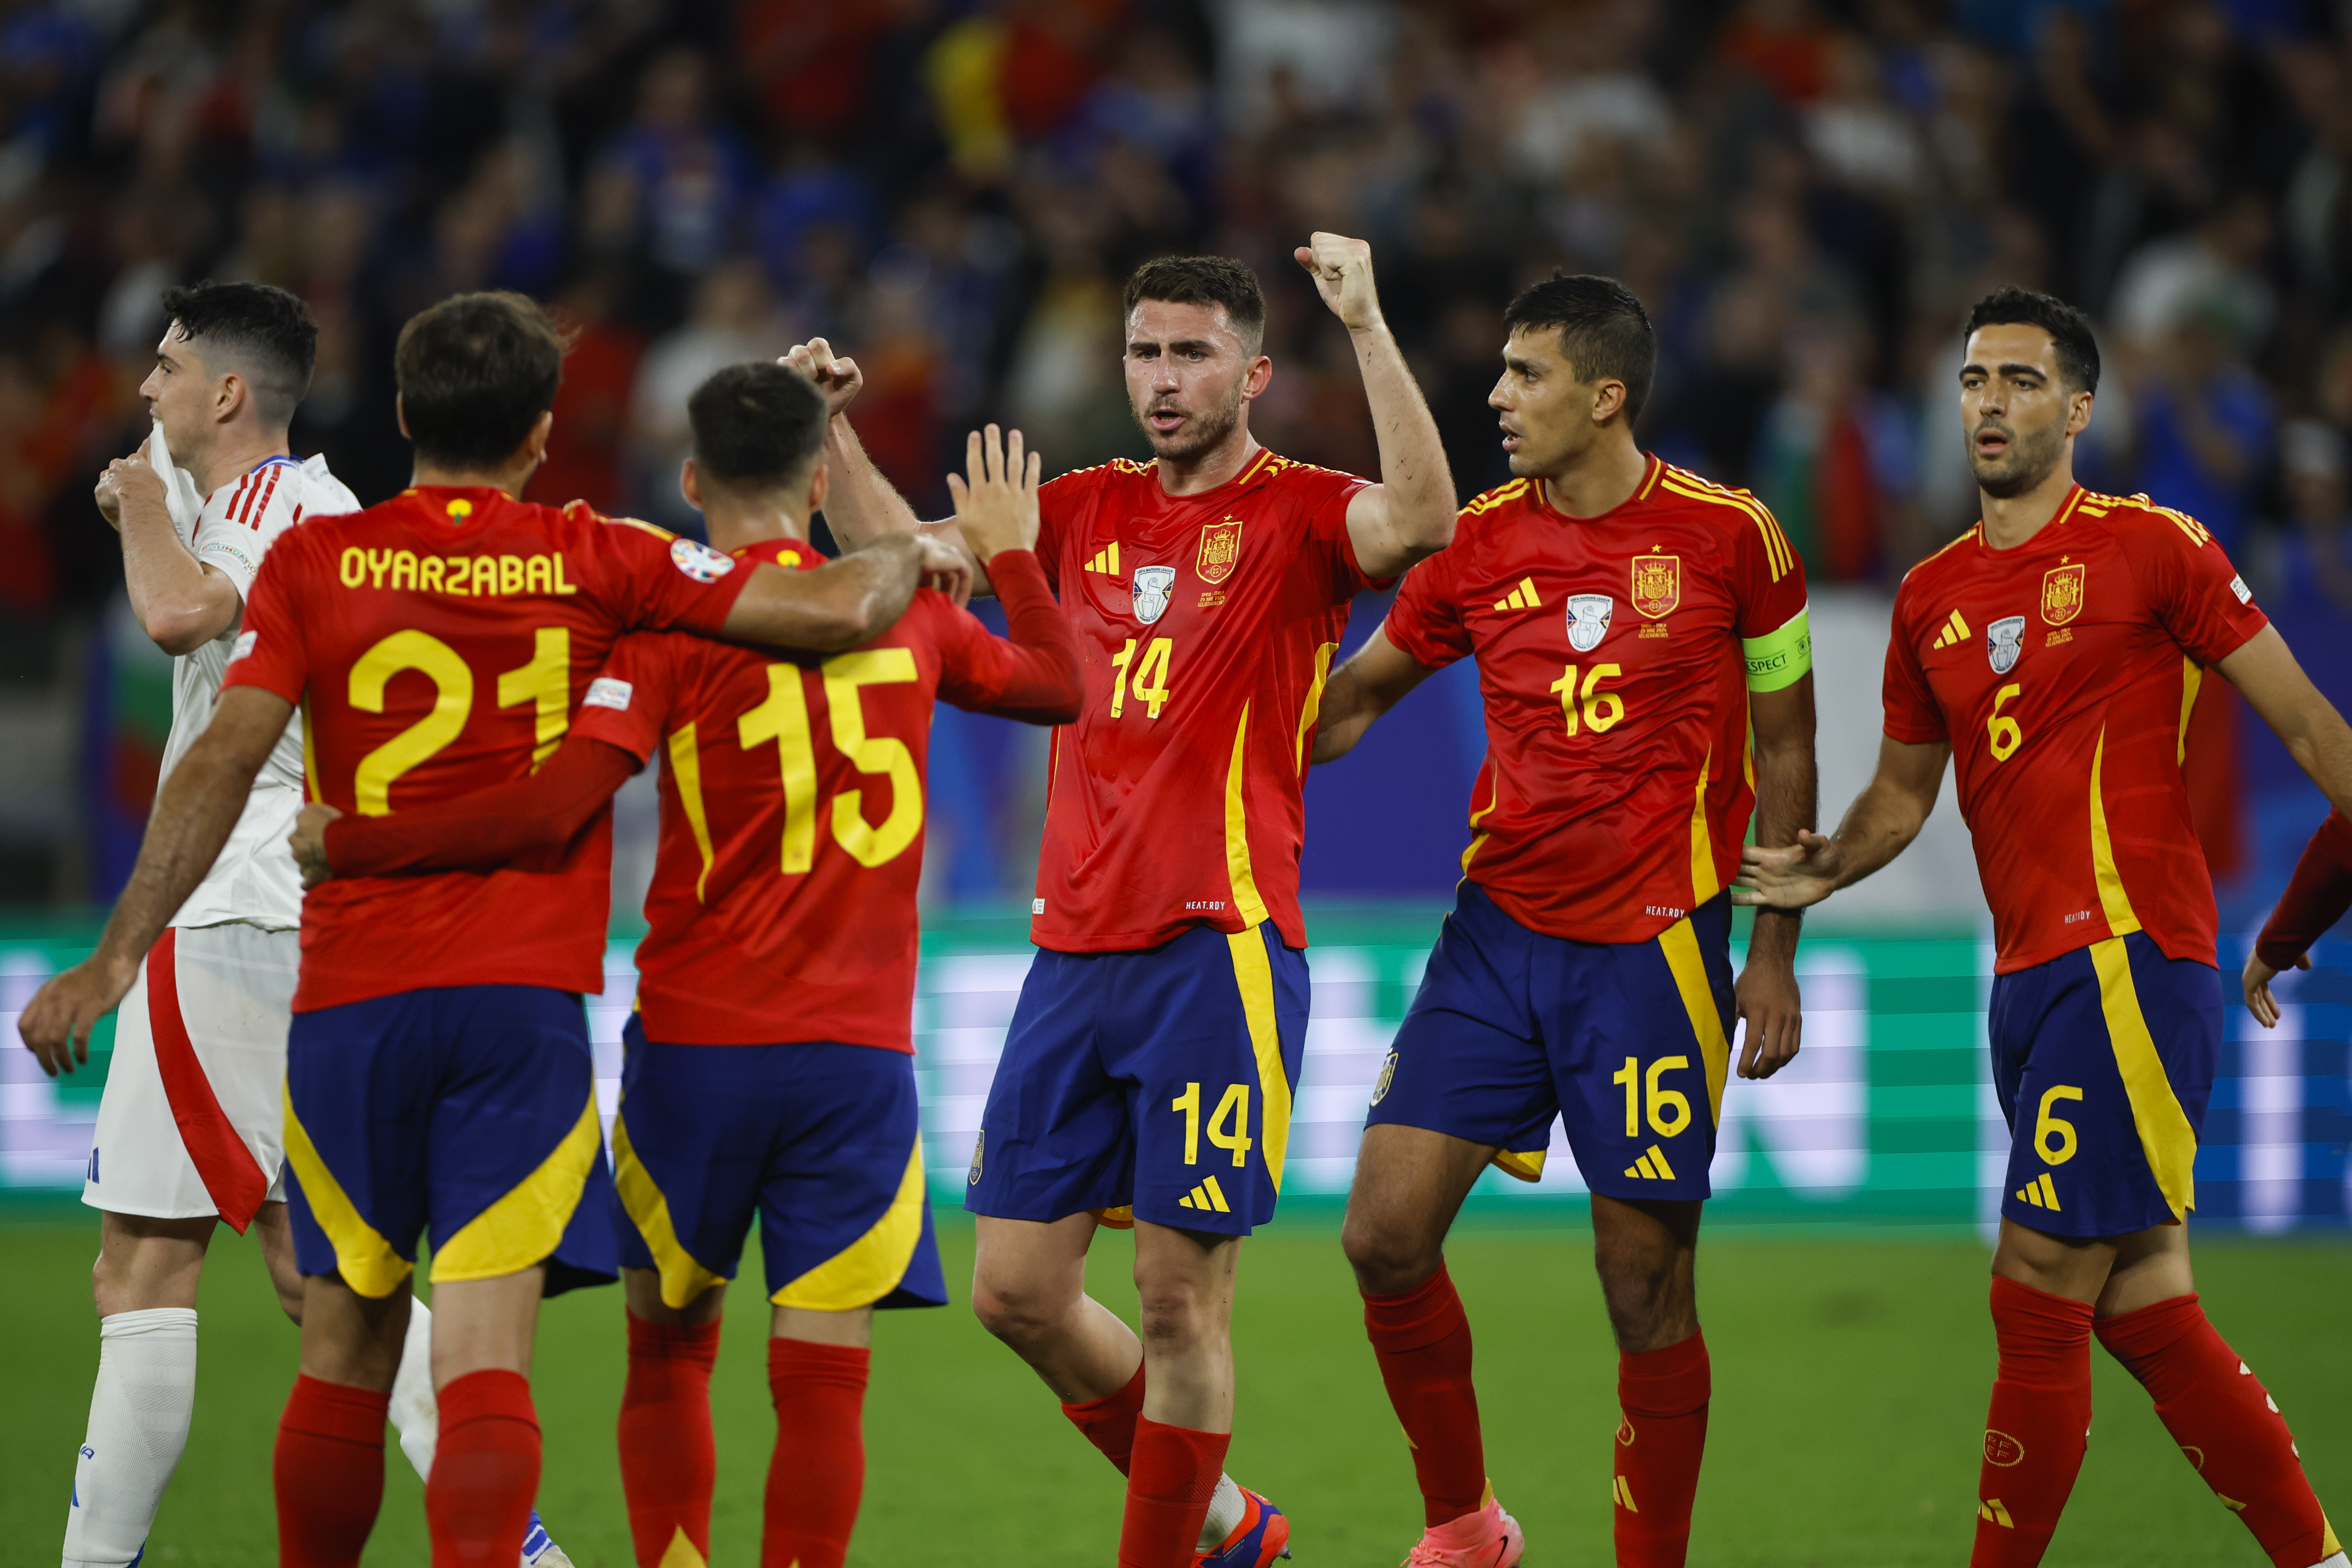 Los jugadores de la selección española celebran su victoria contra Italia.